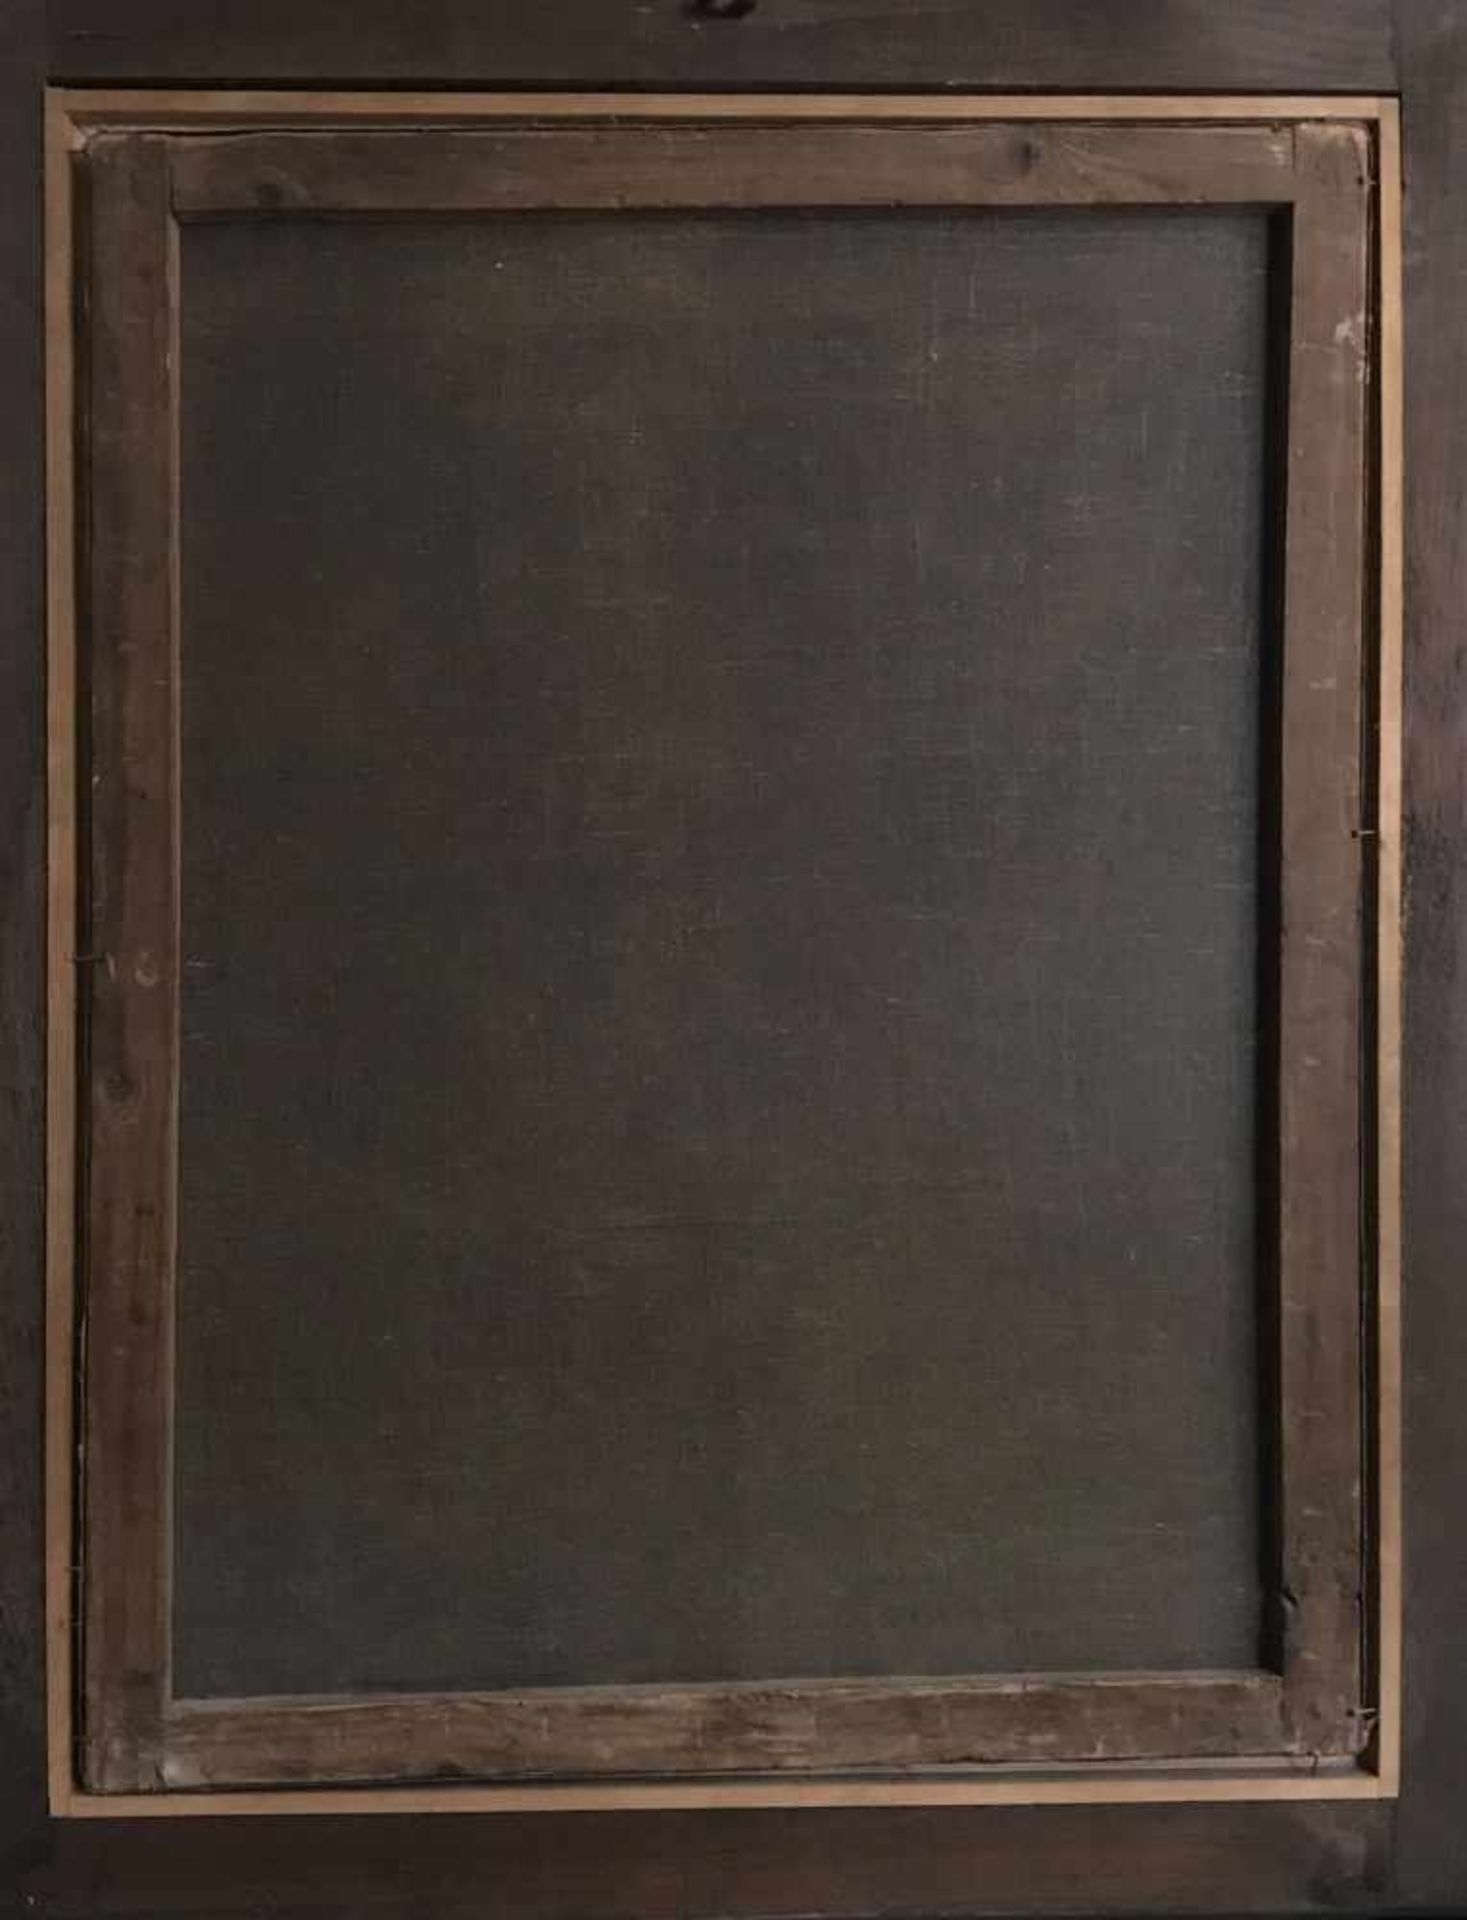 Unbekannter Künstler, 1. H. 19. Jh., Offizier im Harnisch, Öl/Lwd, Altersspuren, 89 x 68 cm - Bild 5 aus 5